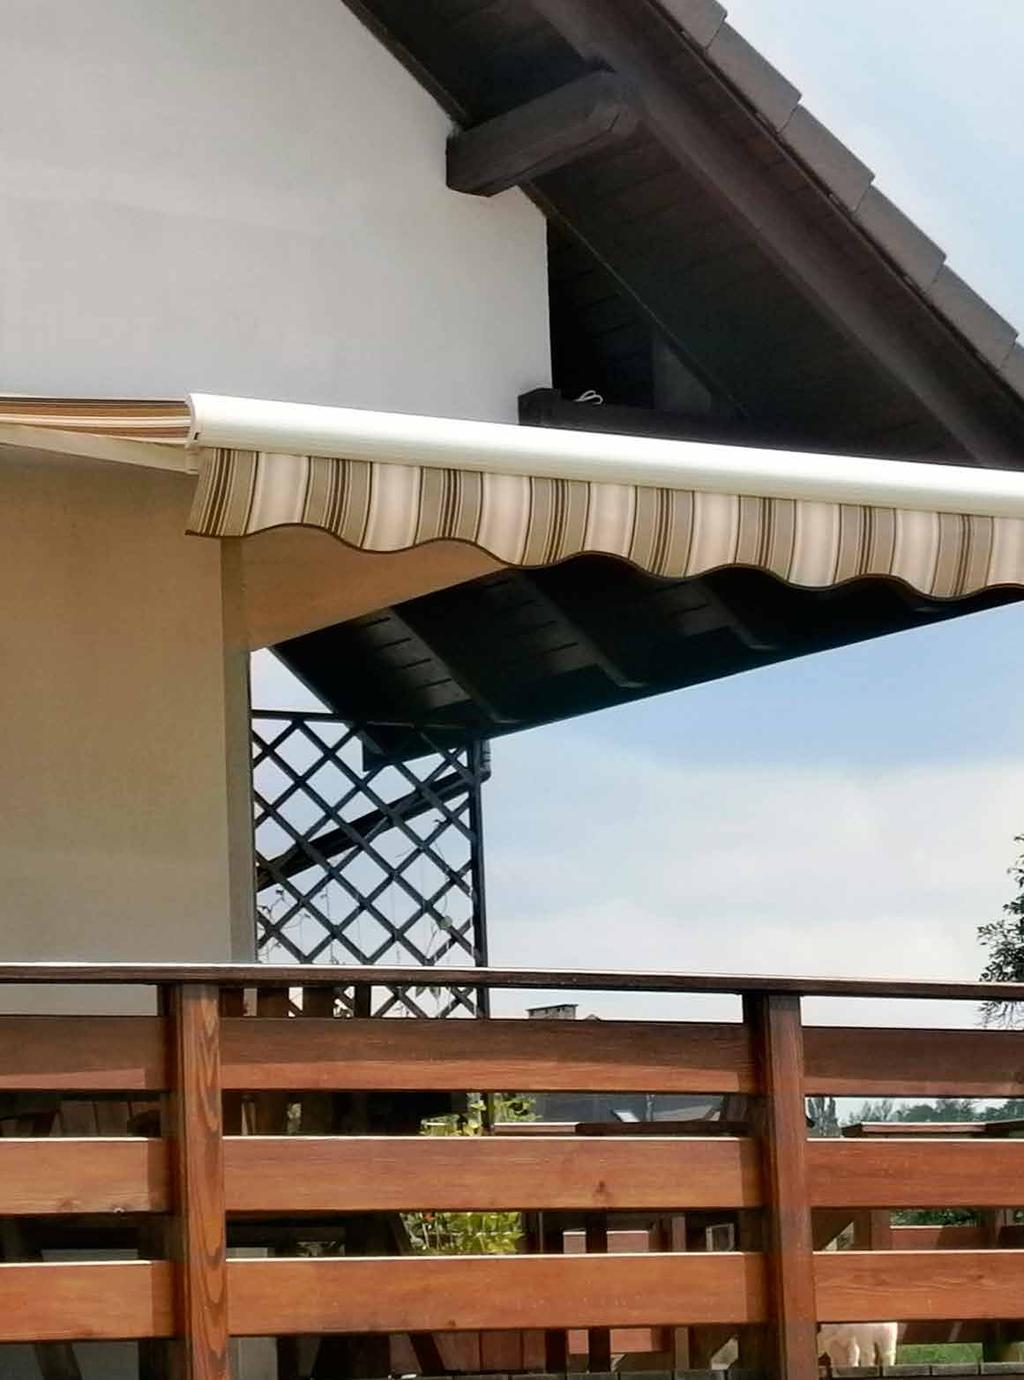 Markizy tarasowe i balkonowe Przeznaczenie Markiza jest produktem przeznaczonym do osłony powierzchni zewnętrznych przed nadmiernym nasłonecznieniem.